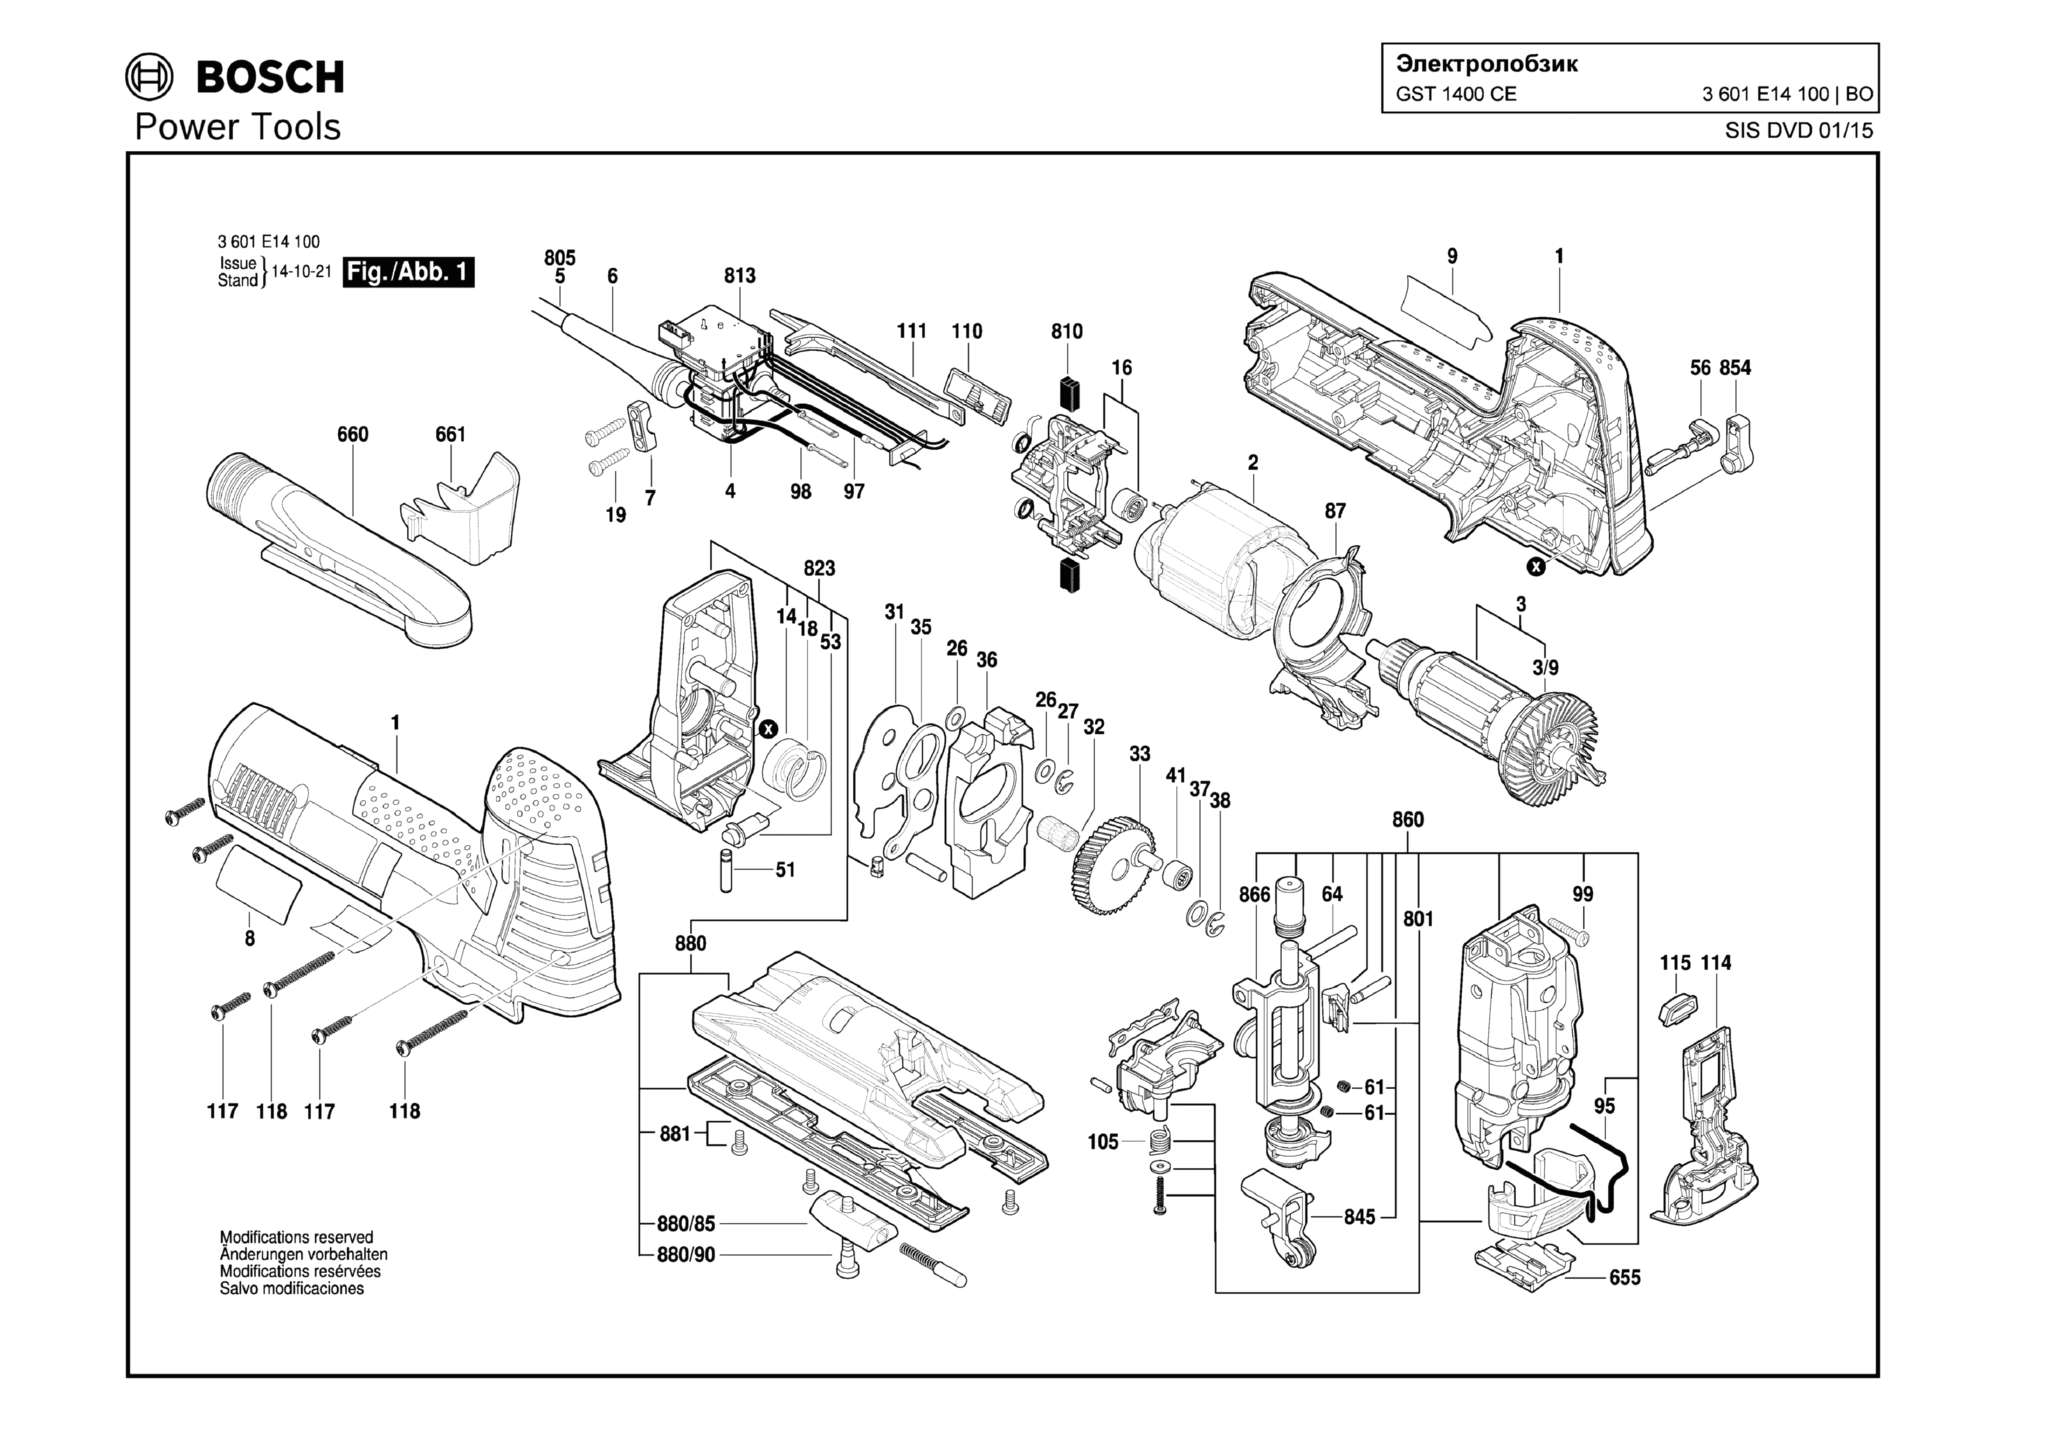 Запчасти, схема и деталировка Bosch GST 1400 CE (ТИП 3601E14100)